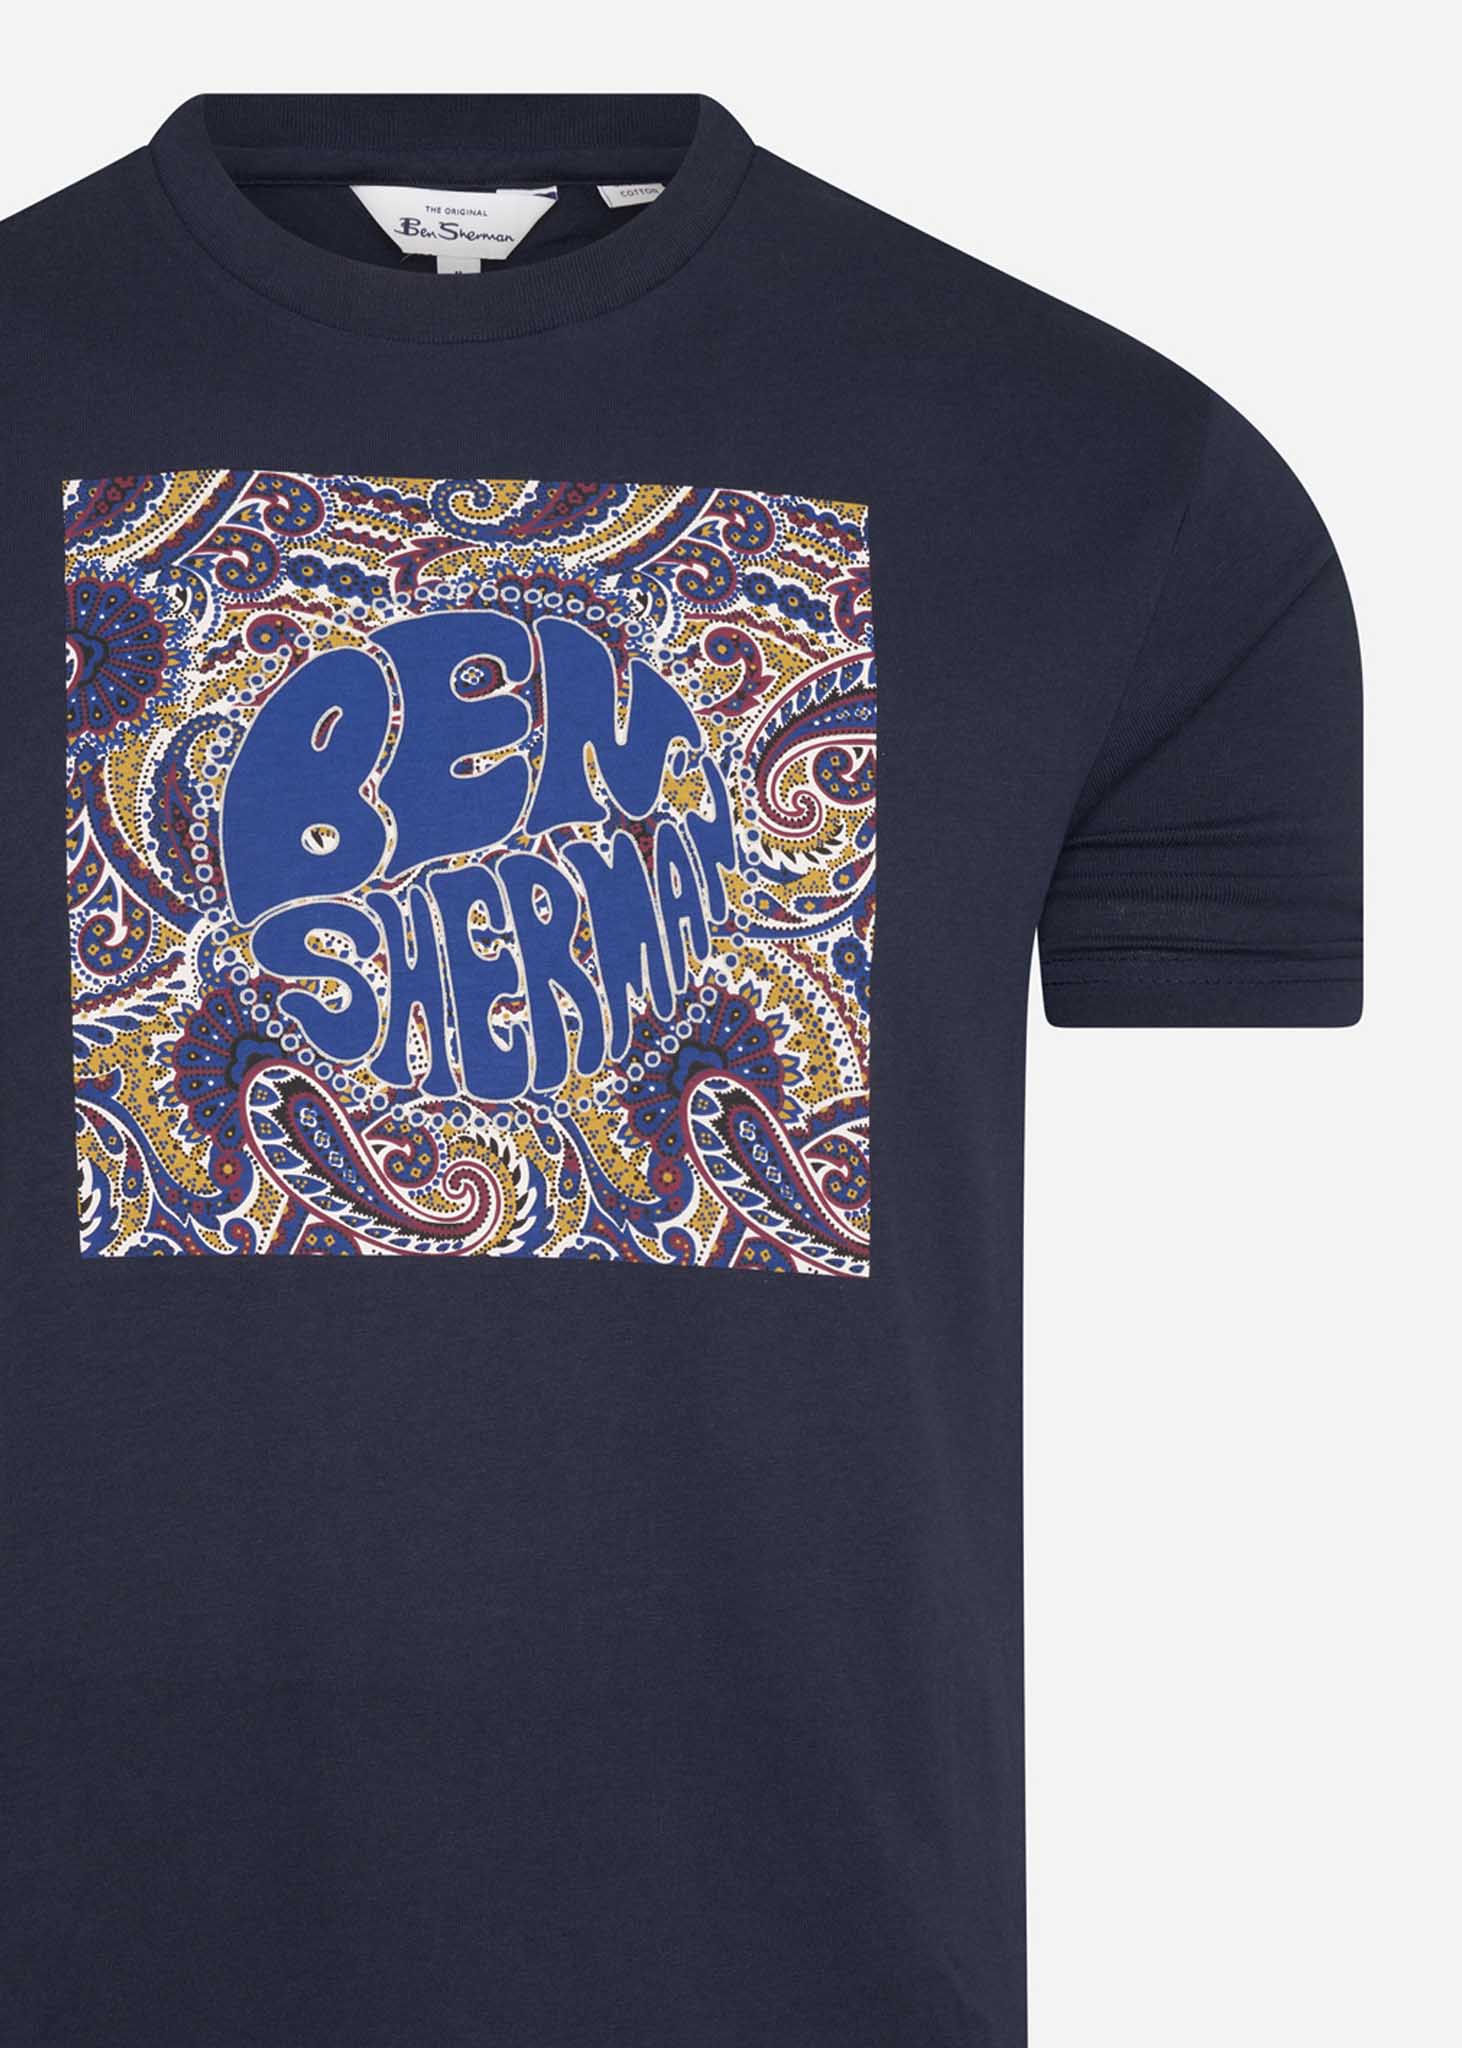 Ben Sherman T-shirts  Paisley logo tee - dark navy 